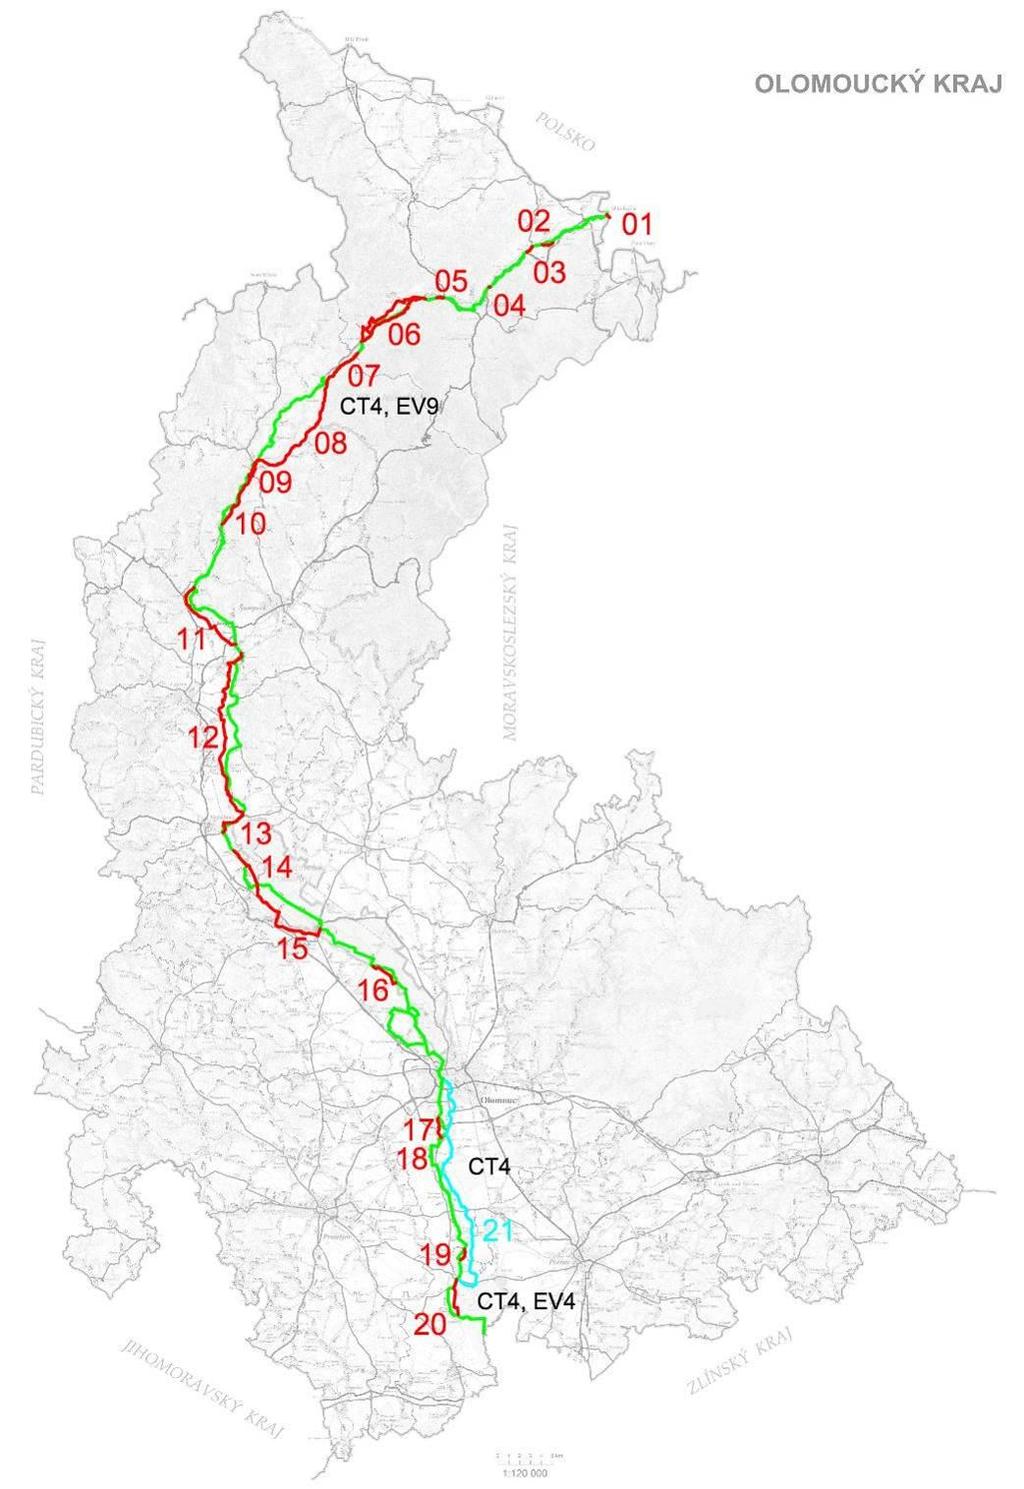 Mapa 3 - Návrh úprav Moravské stezky, zeleně - aktuální trasa, červeně - návrh na